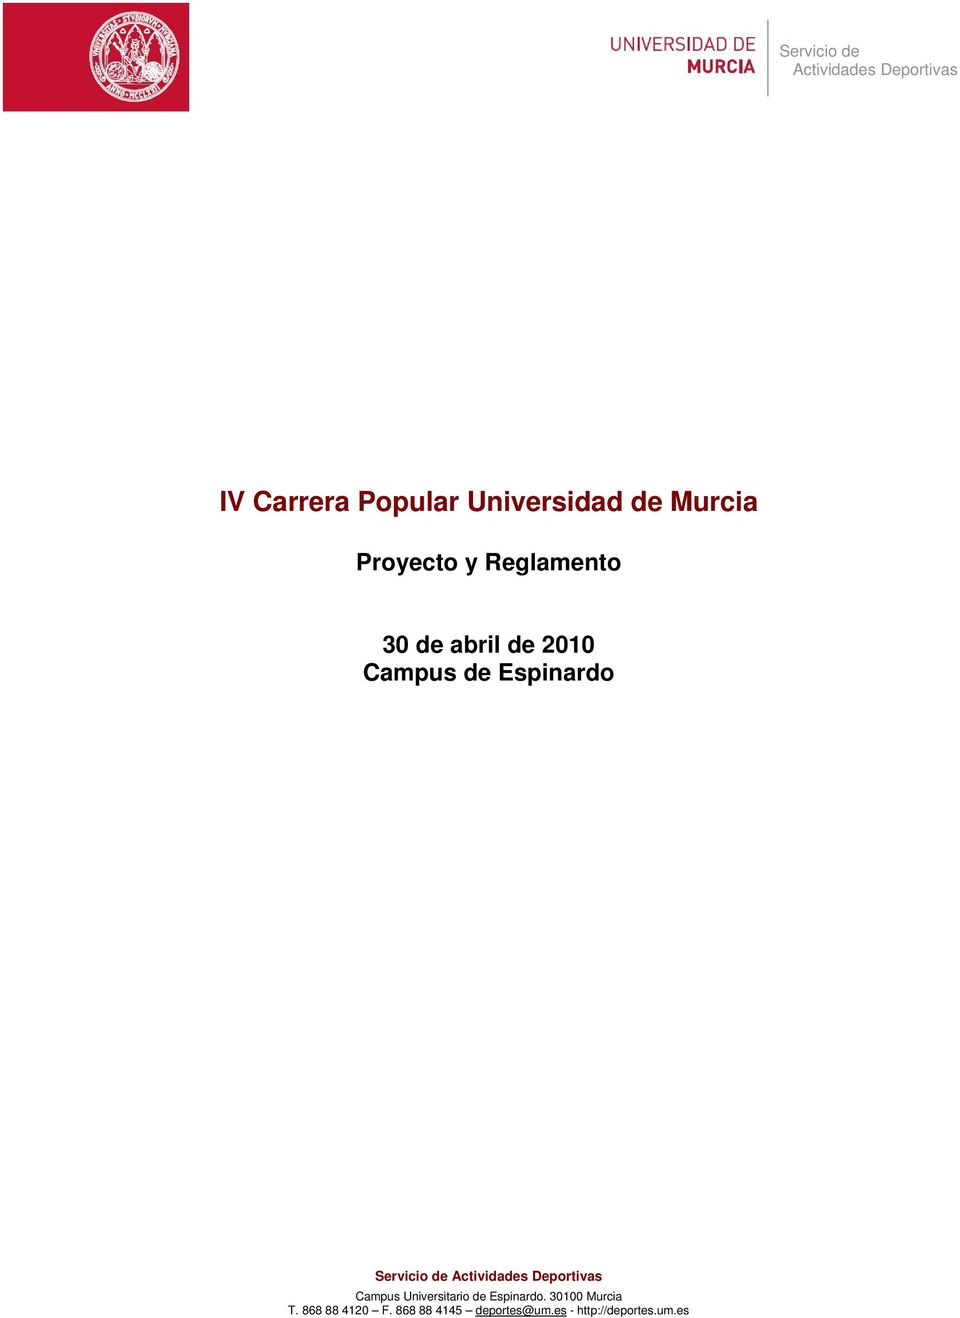 Servicio de Campus Universitario de Espinardo.